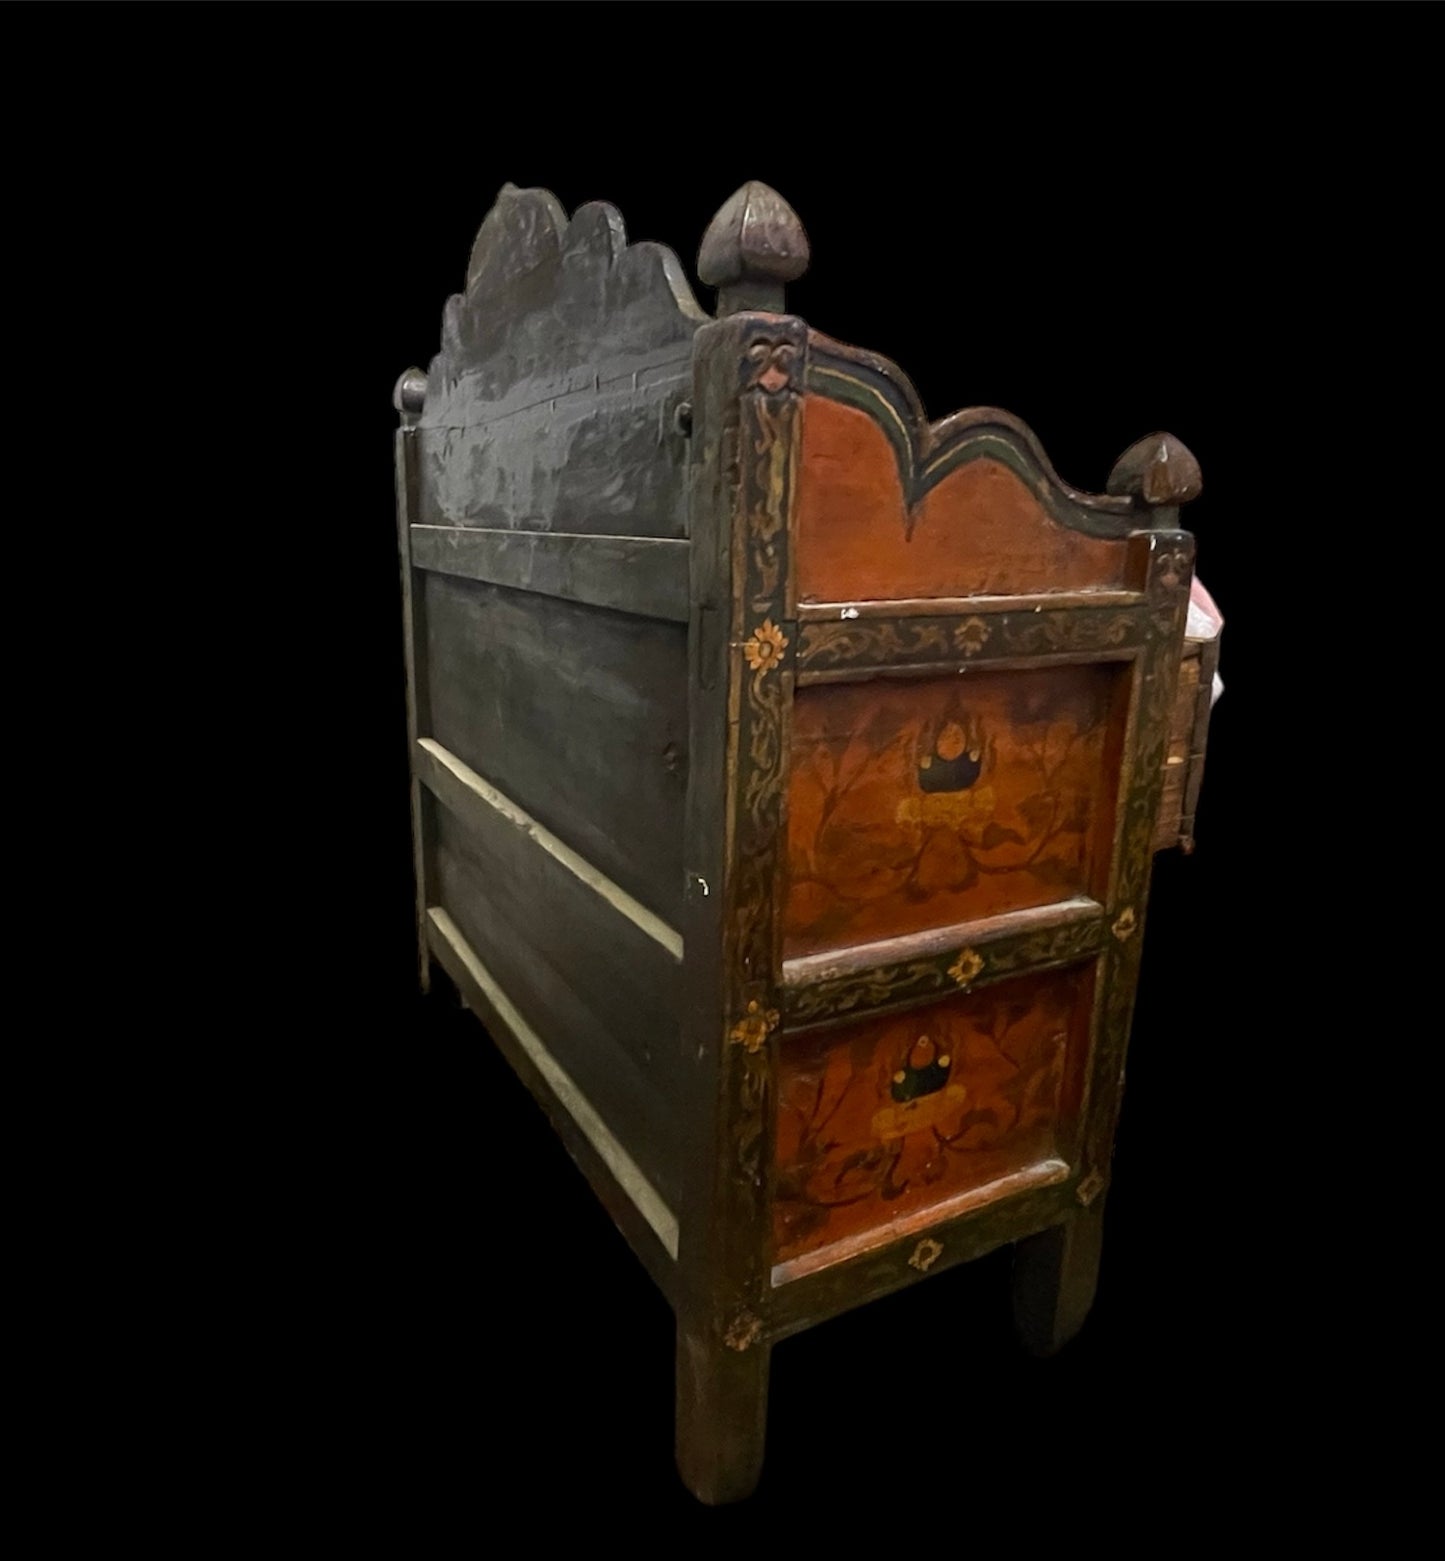 An antique Tibetan chest - apothecary